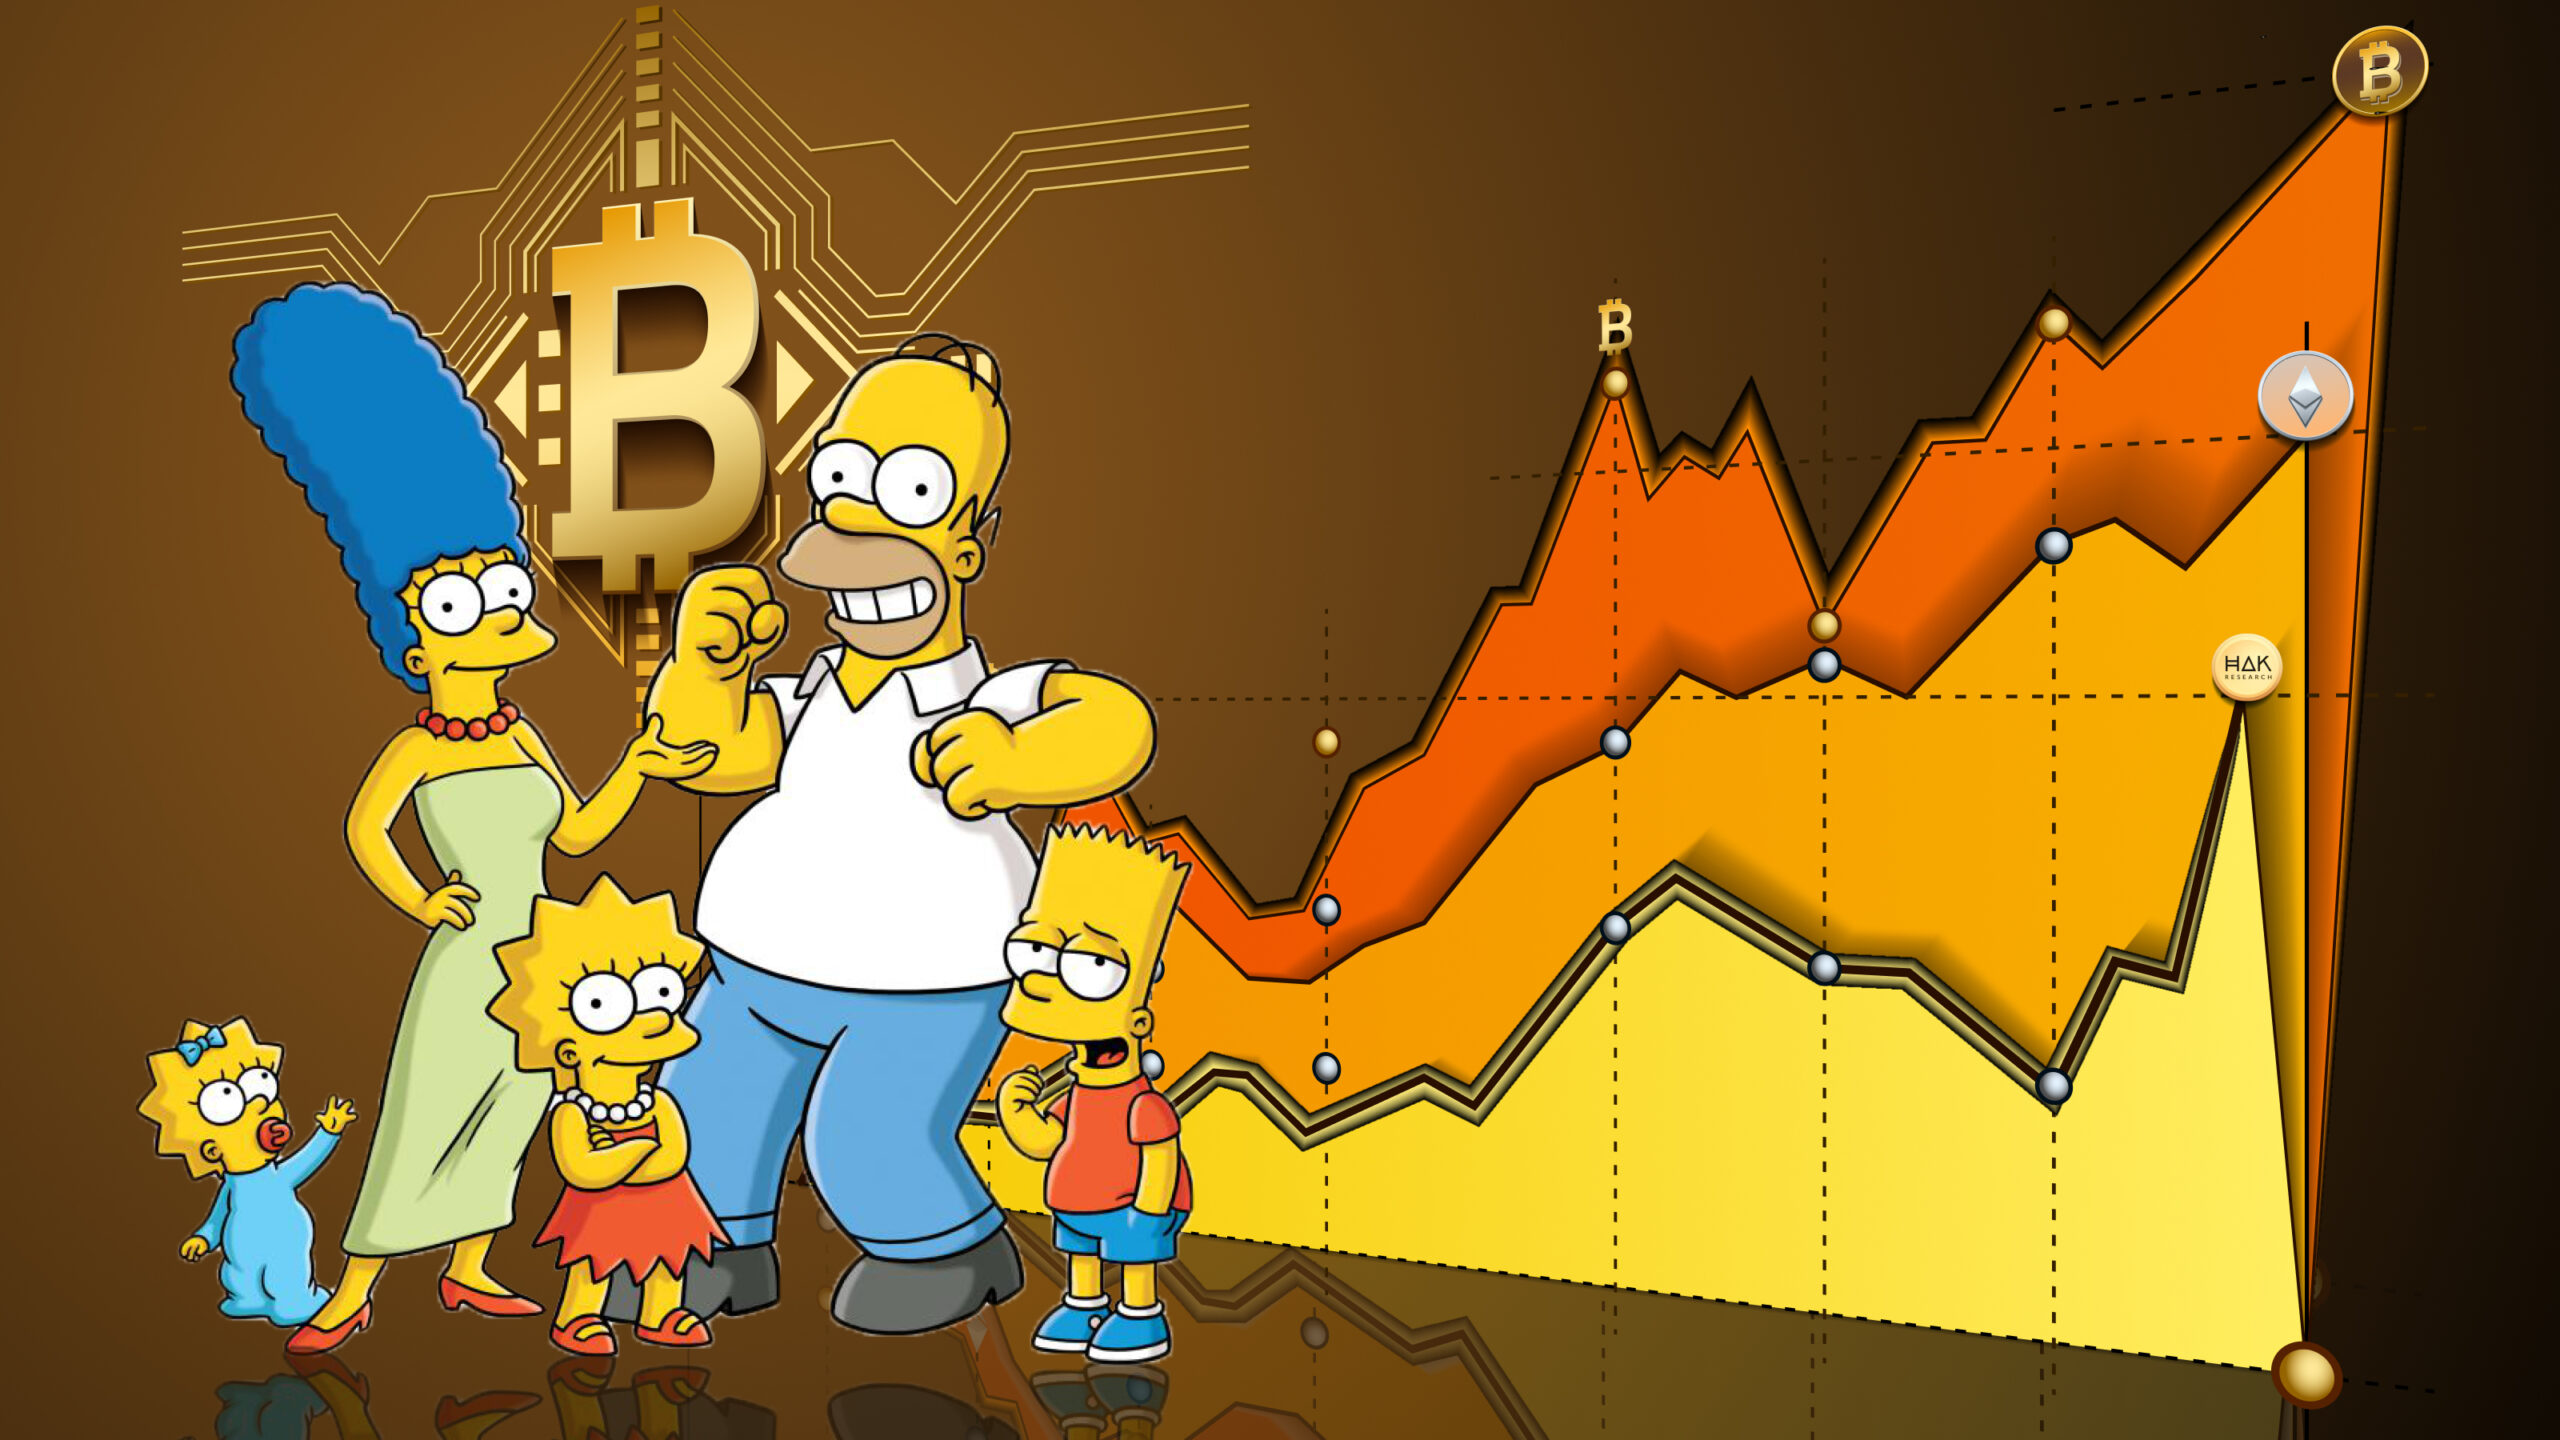 phim hoạt hình the simpsons Bart Simpson 4K tải xuống hình nền